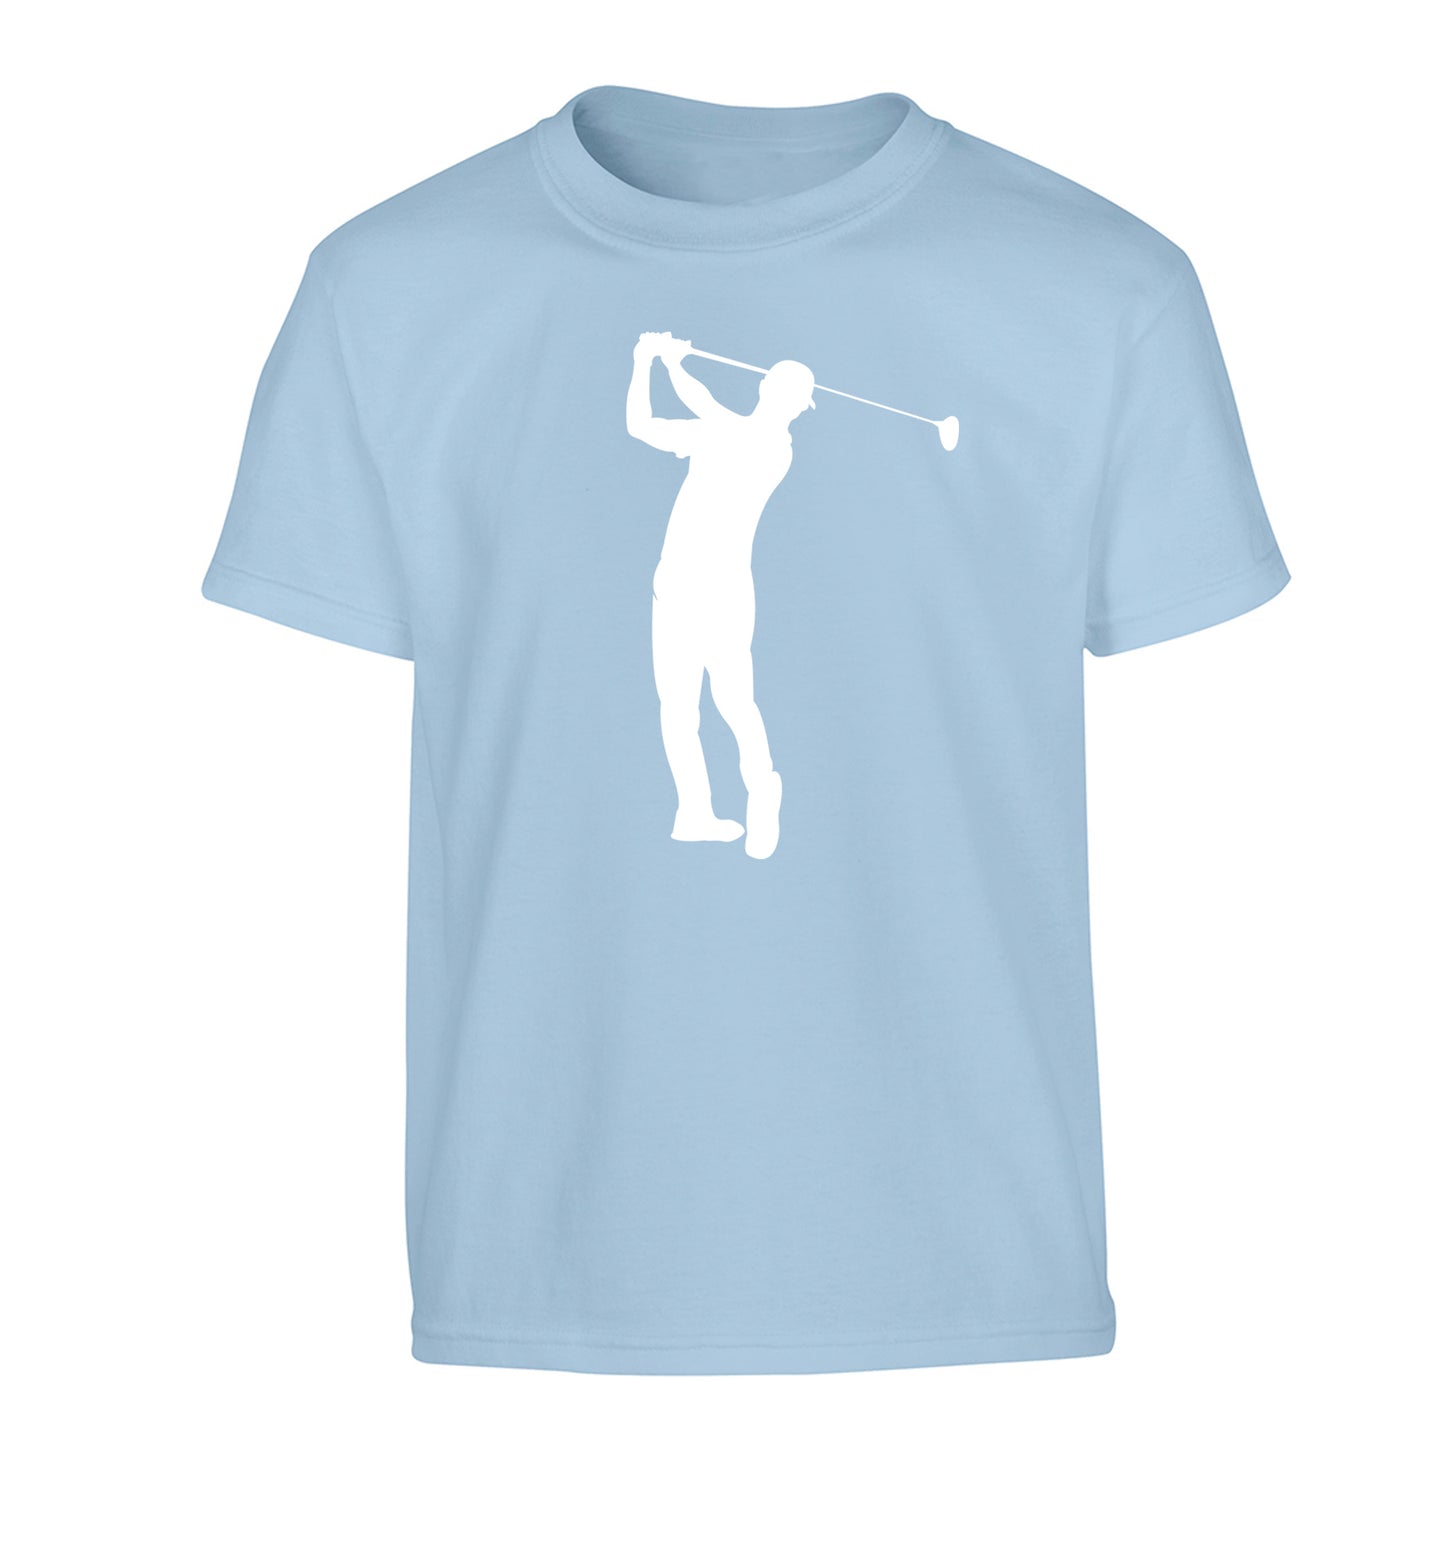 Golfer Illustration Children's light blue Tshirt 12-13 Years